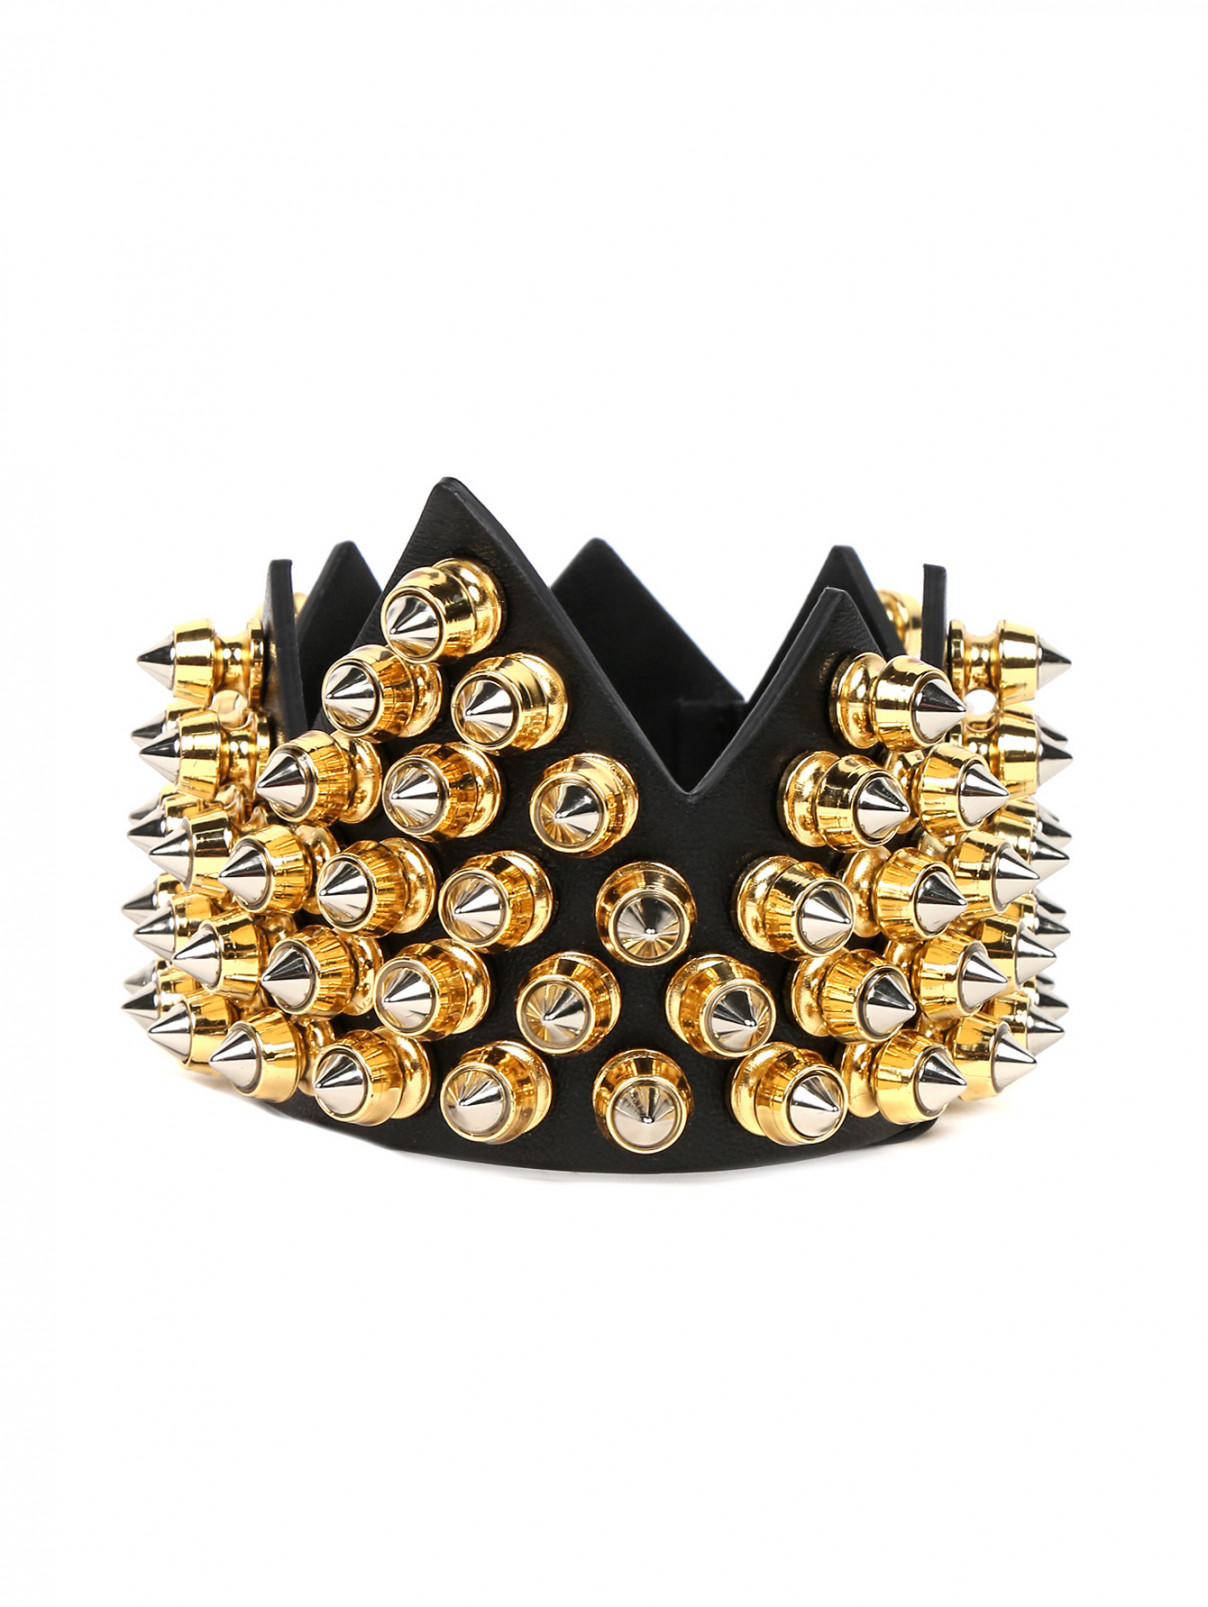 Корона из кожи с декоративной отделкой из металла Moschino Couture  –  Общий вид  – Цвет:  Черный